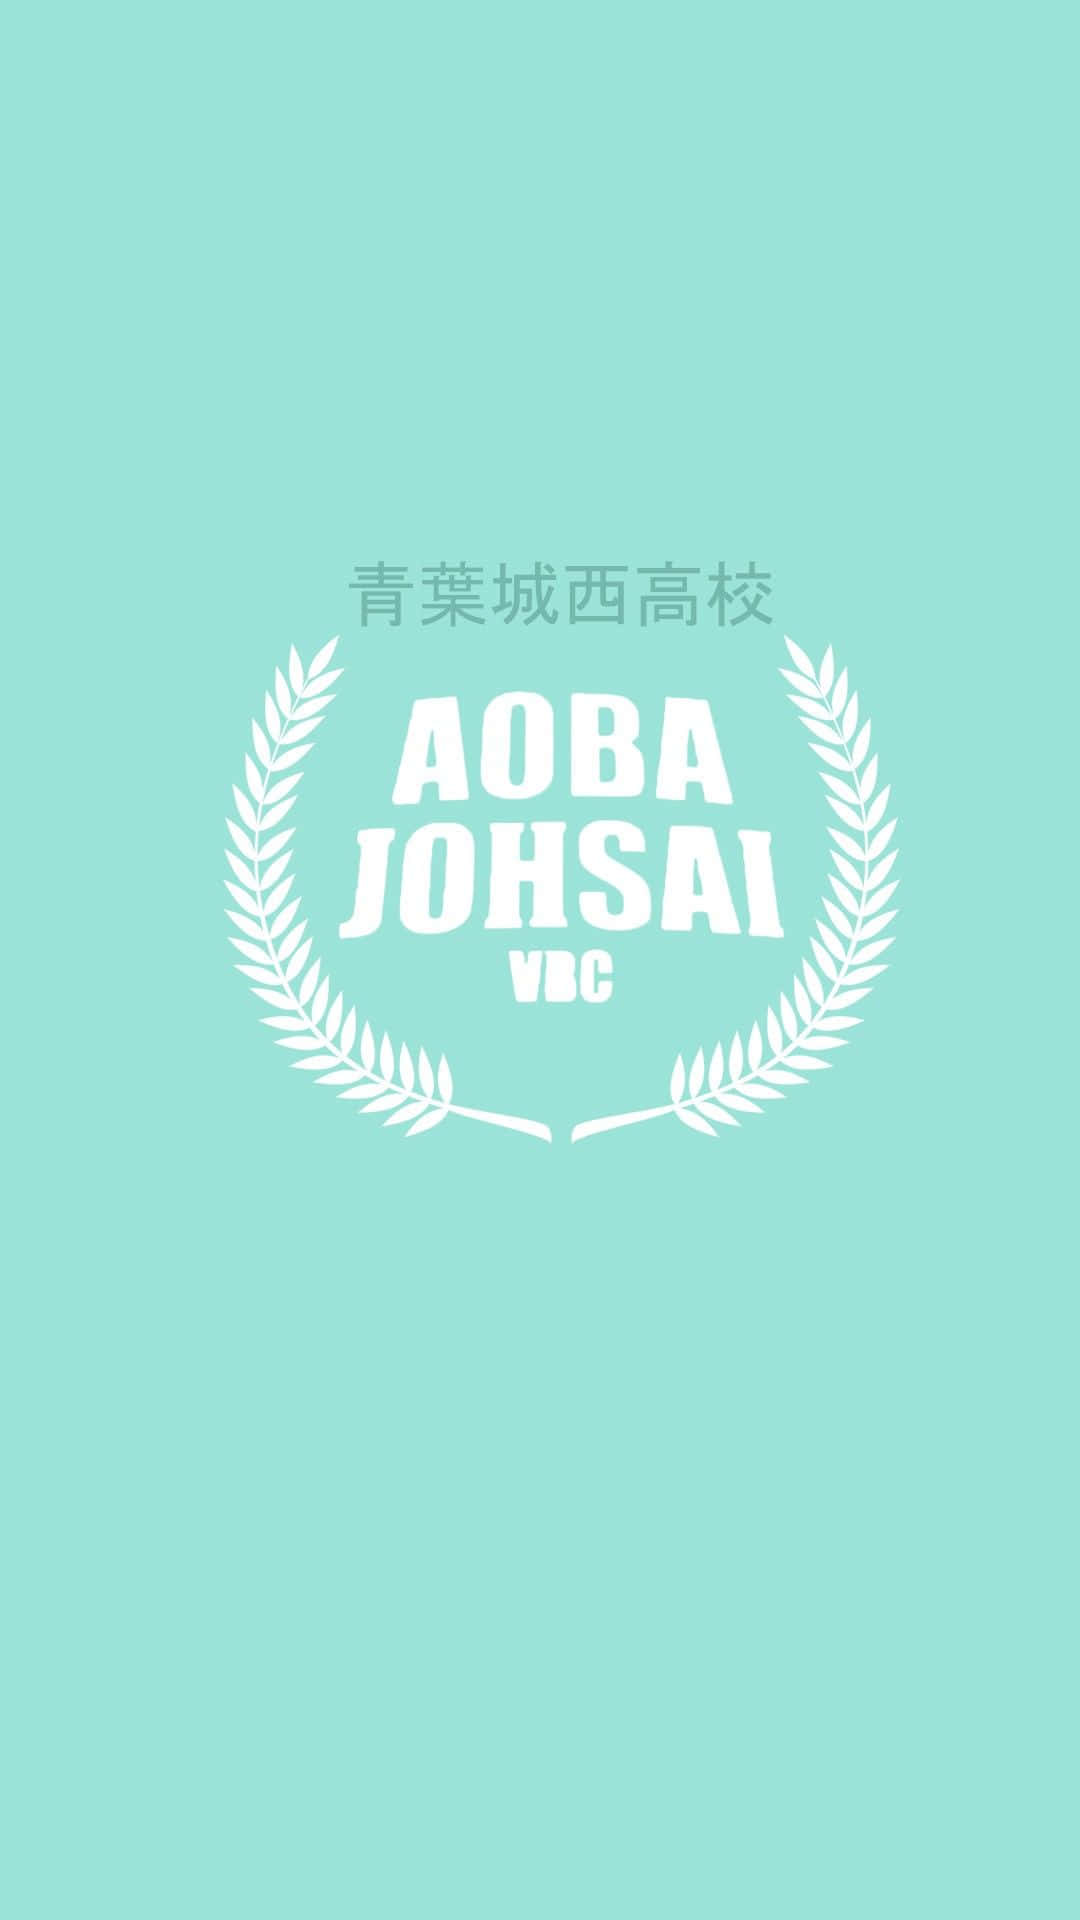 Det danner et bånd af teamwork, Aoba Johsai tørrer banen med deres modstandere. Wallpaper